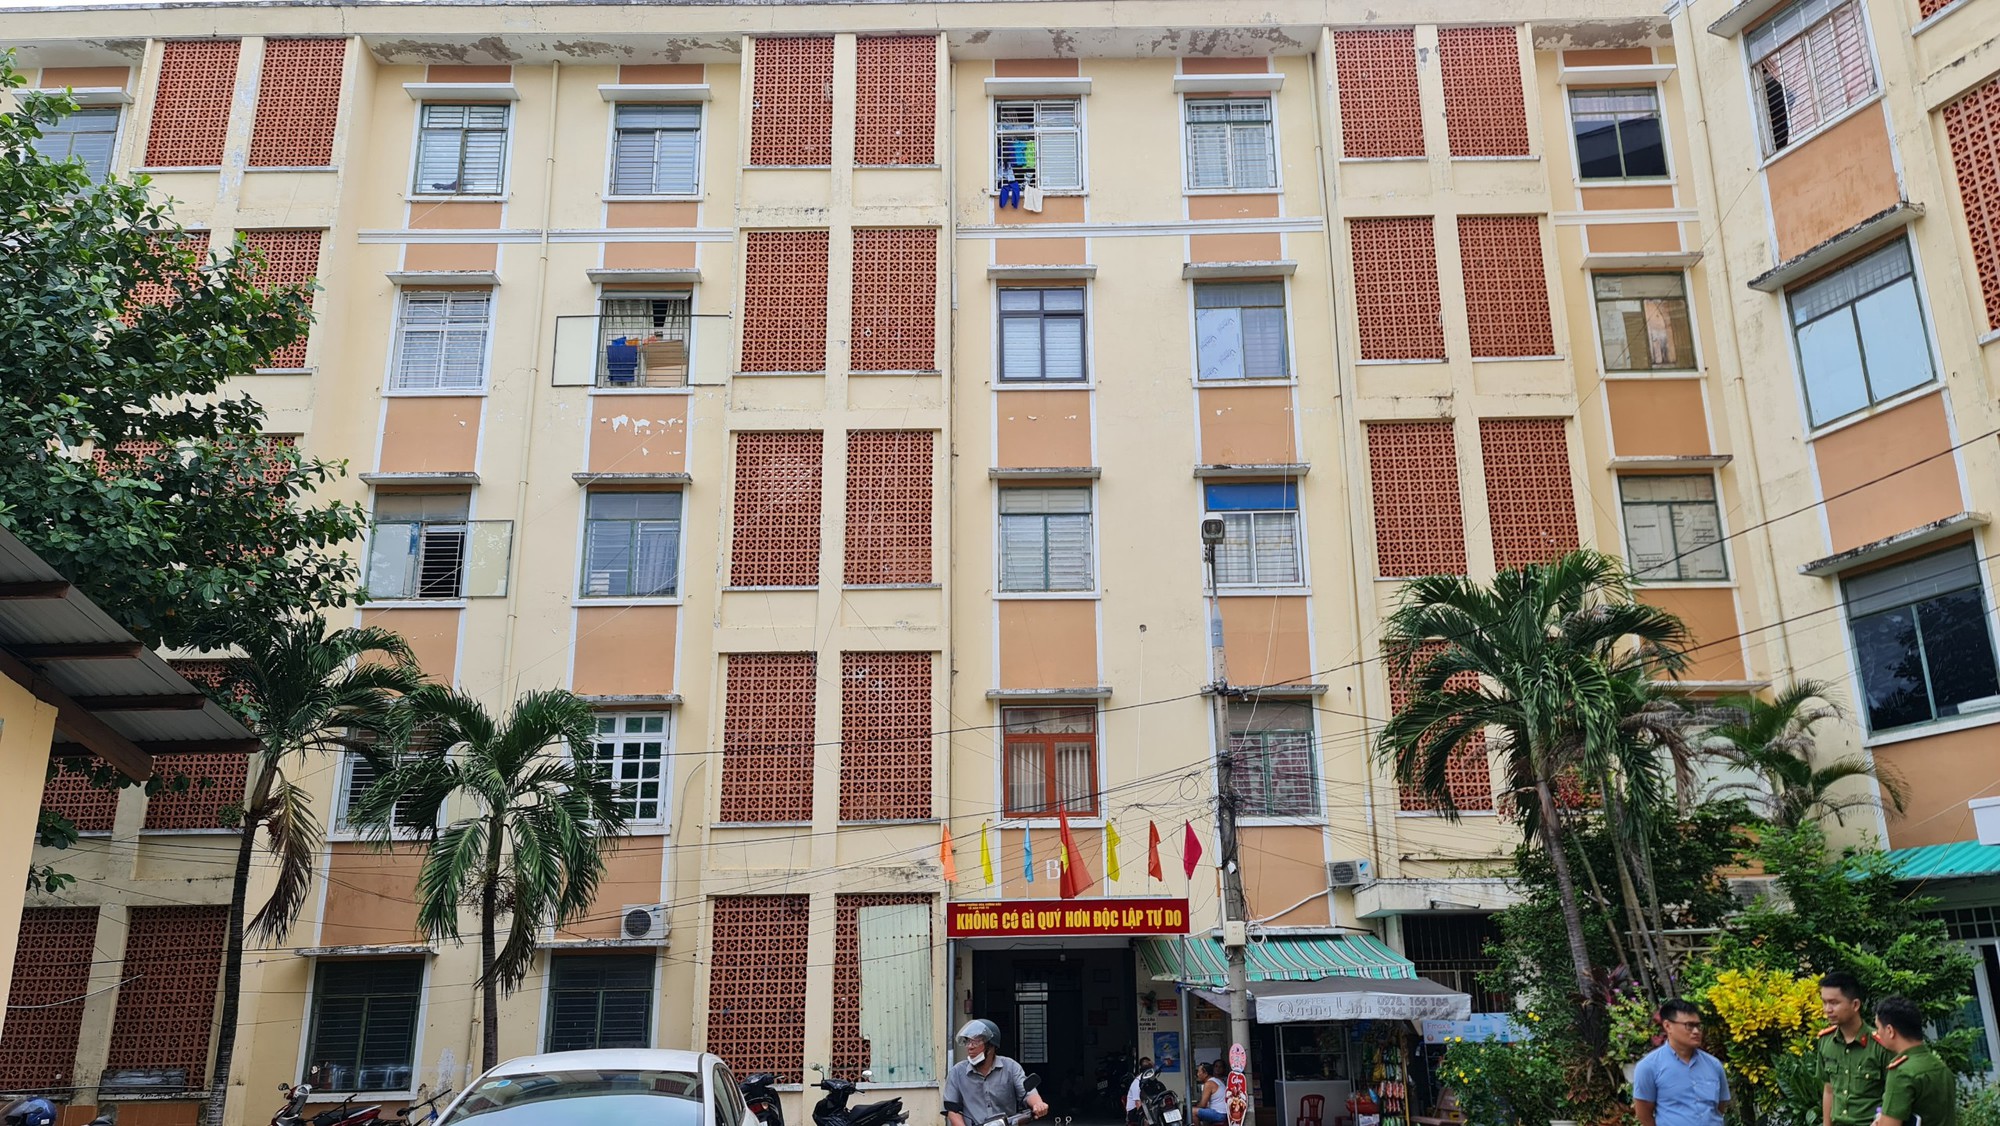 Kiểm tra PCCC của hàng ngàn chung cư, nhà trọ tại Đà Nẵng - Ảnh 8.